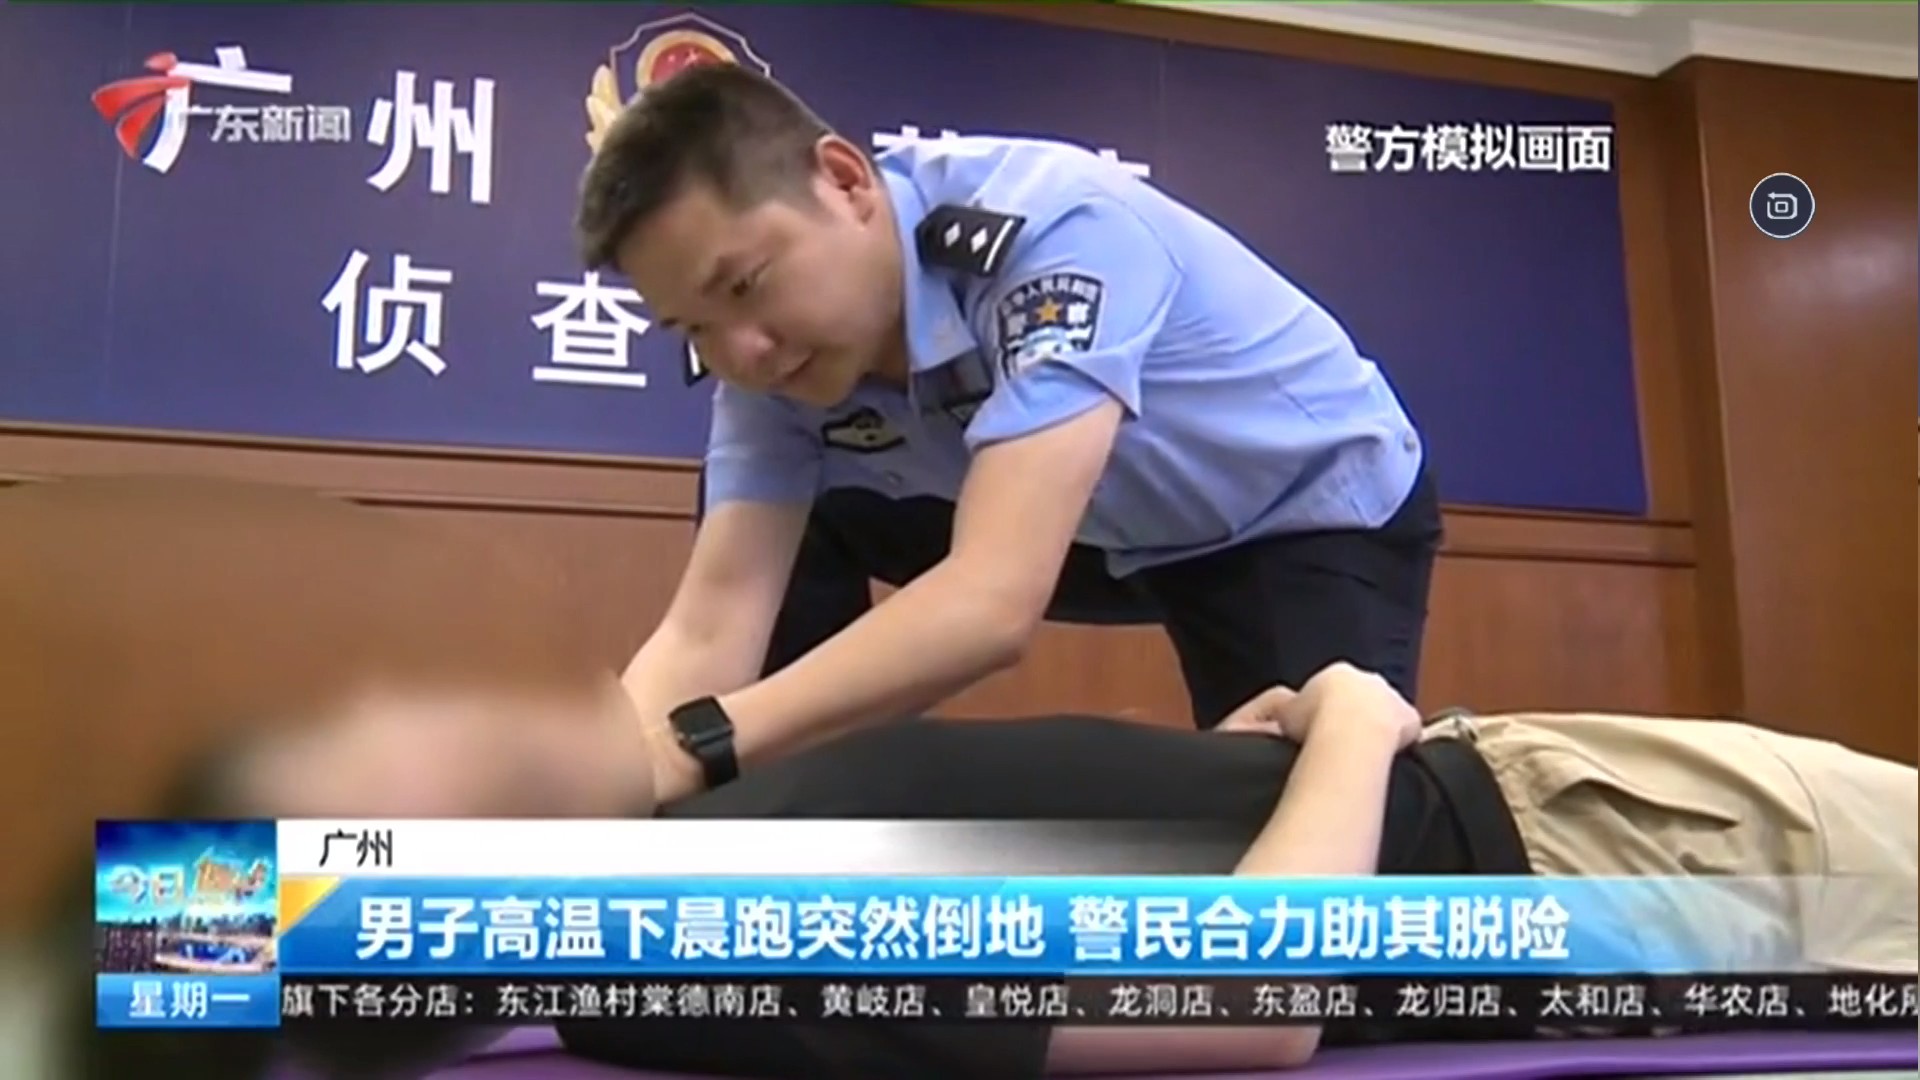 广东新闻频道 今日焦点 【广州】男子高温下晨跑突然倒地 警民合力助其脱险